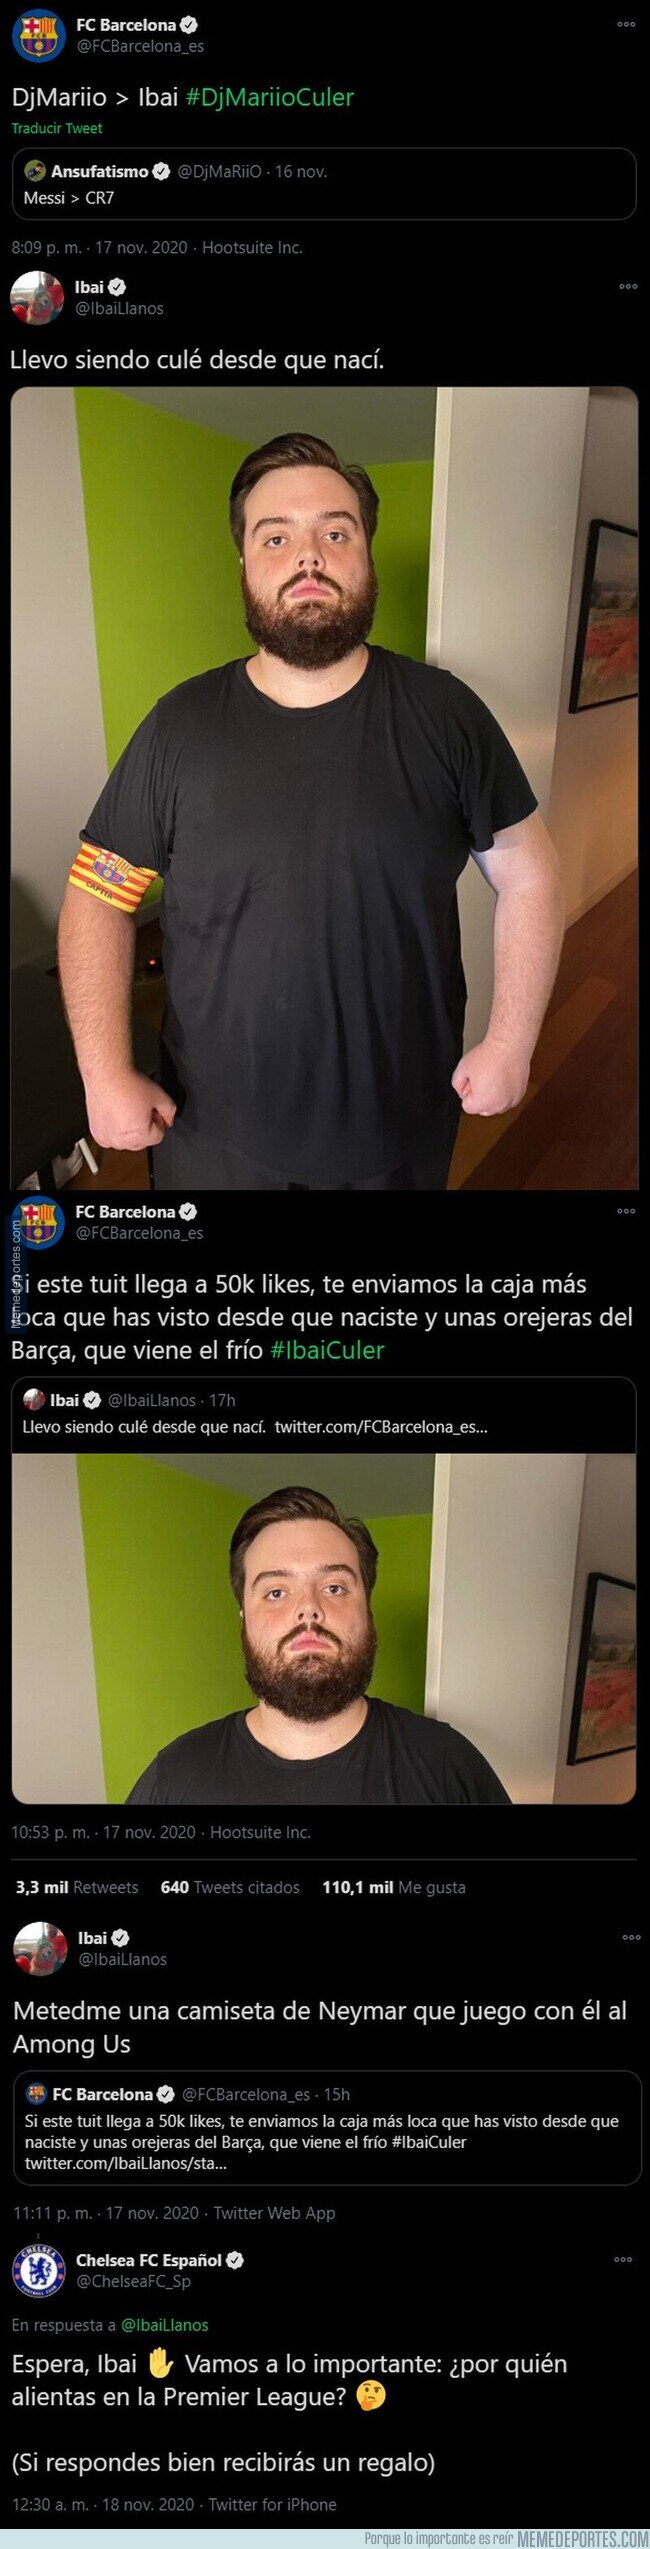 1120679 - La cuenta oficial del Barça e Ibai se enzarzan en esta conversación cachonda y le prometen este regalo si llega a 50.000 likes